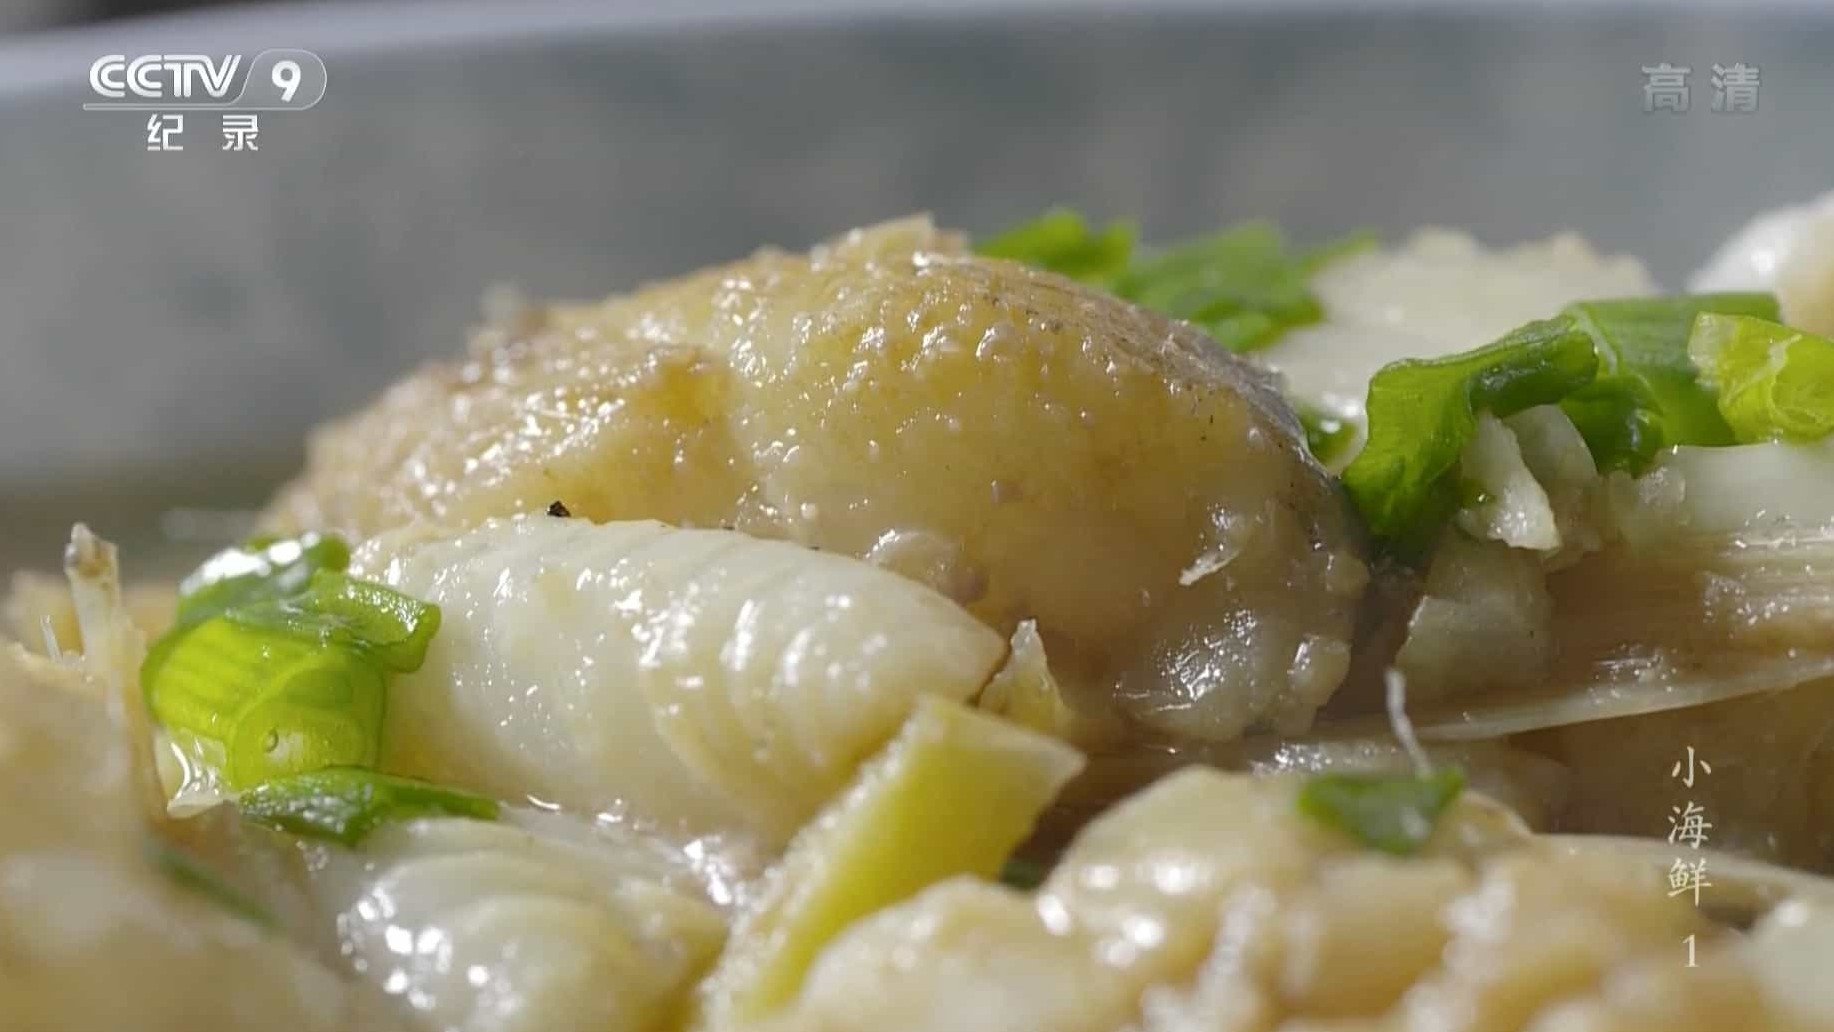  央视美食纪录片/中国美食系列《小海鲜 2015》2集全 国语中字 720P/1080P高清下载